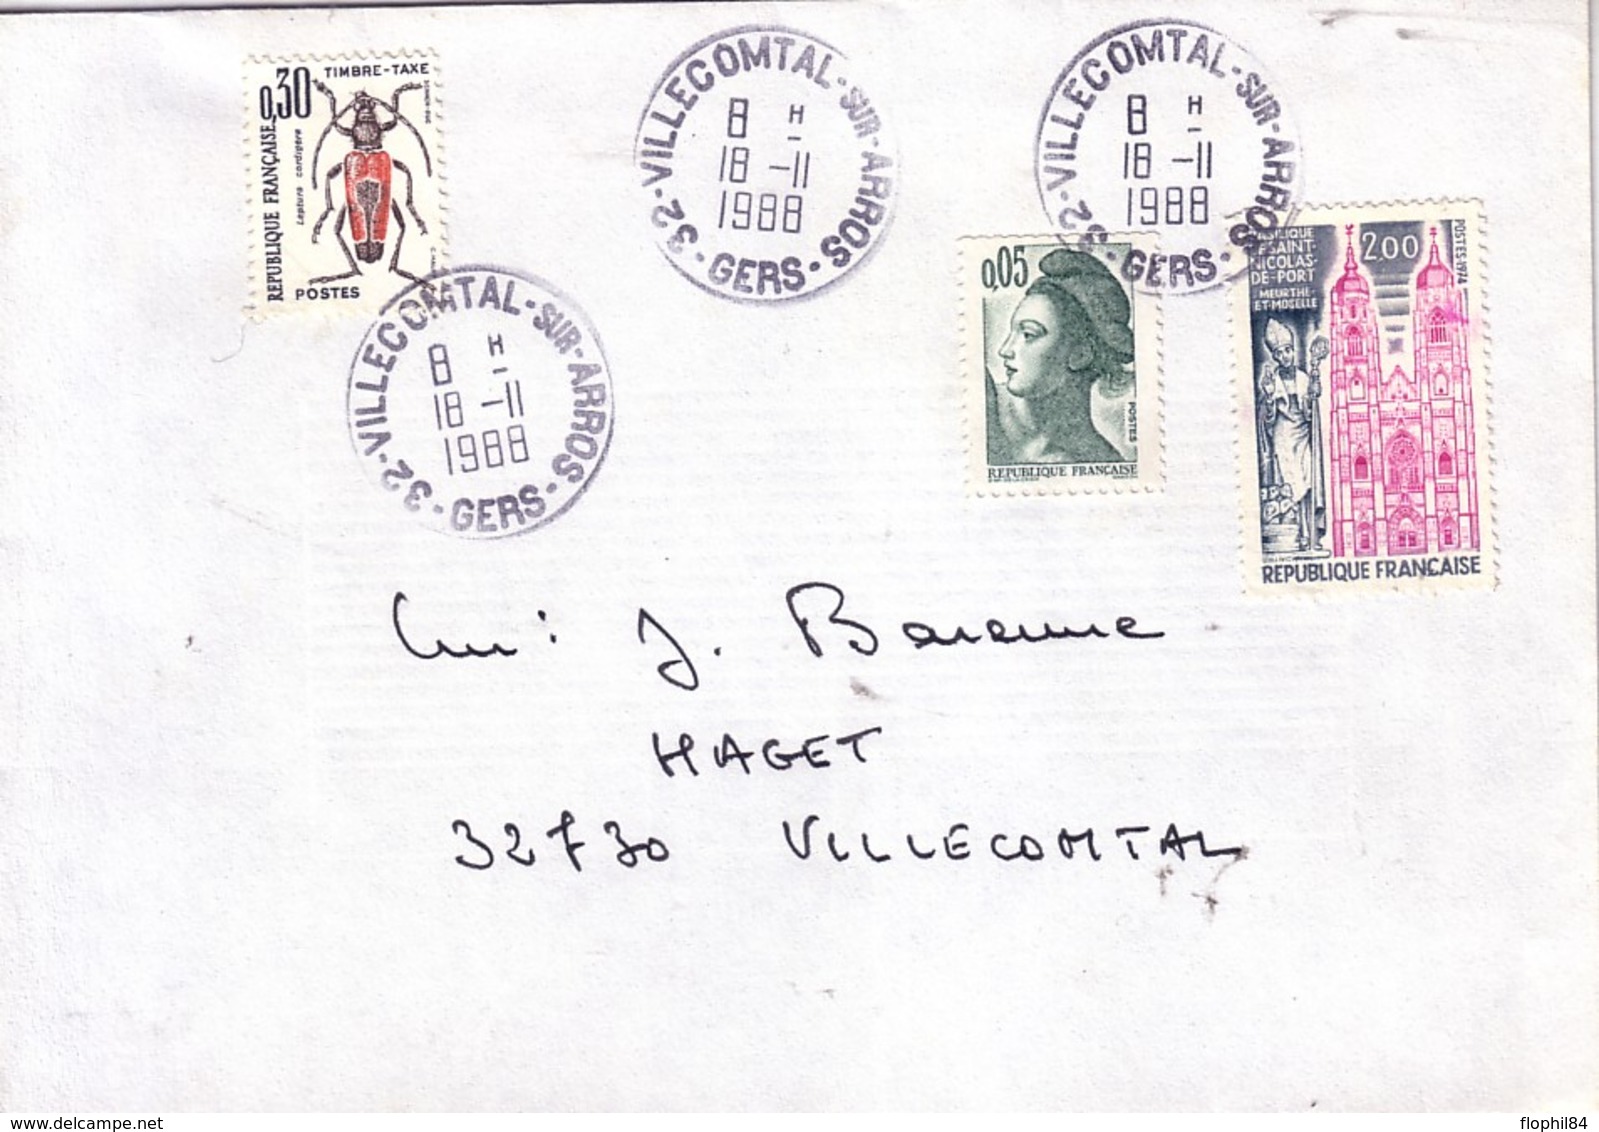 GERS - VILLECOMTAL SUR ARROS - LIBERTE DE GANDON + ST NICOLAS - 18-11-1988 - TAXE INSECTES POUR INSUFFISANCE 0.30C. - 1859-1959 Lettres & Documents